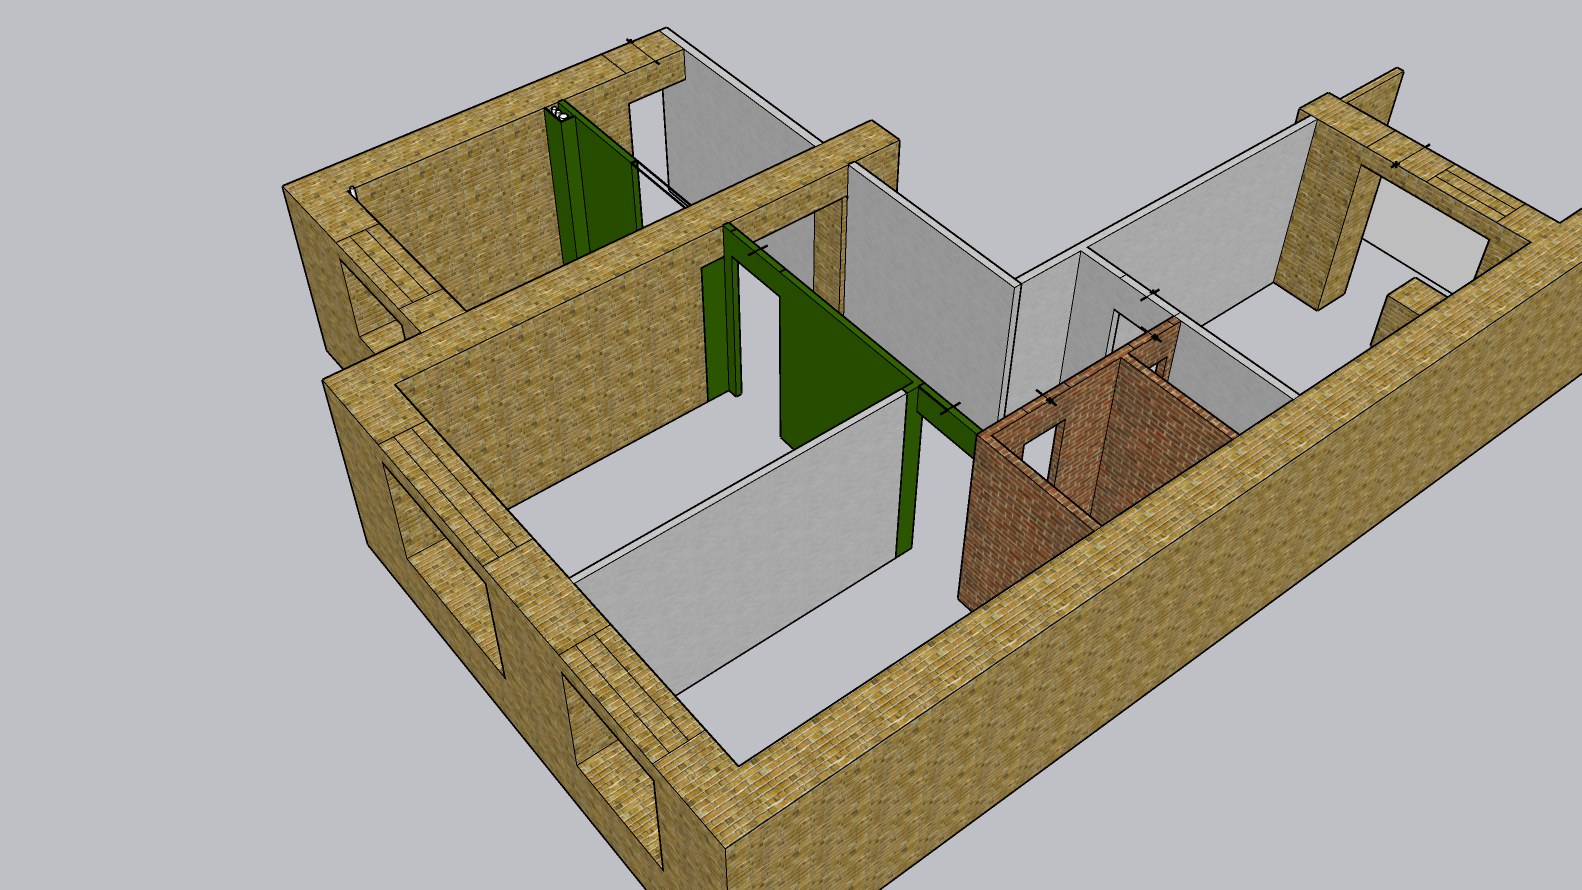 Модель квартиры после окончания ремонта. Зеленым выделены новые перегородки, которые я планирую сделать из пазогребневых блоков